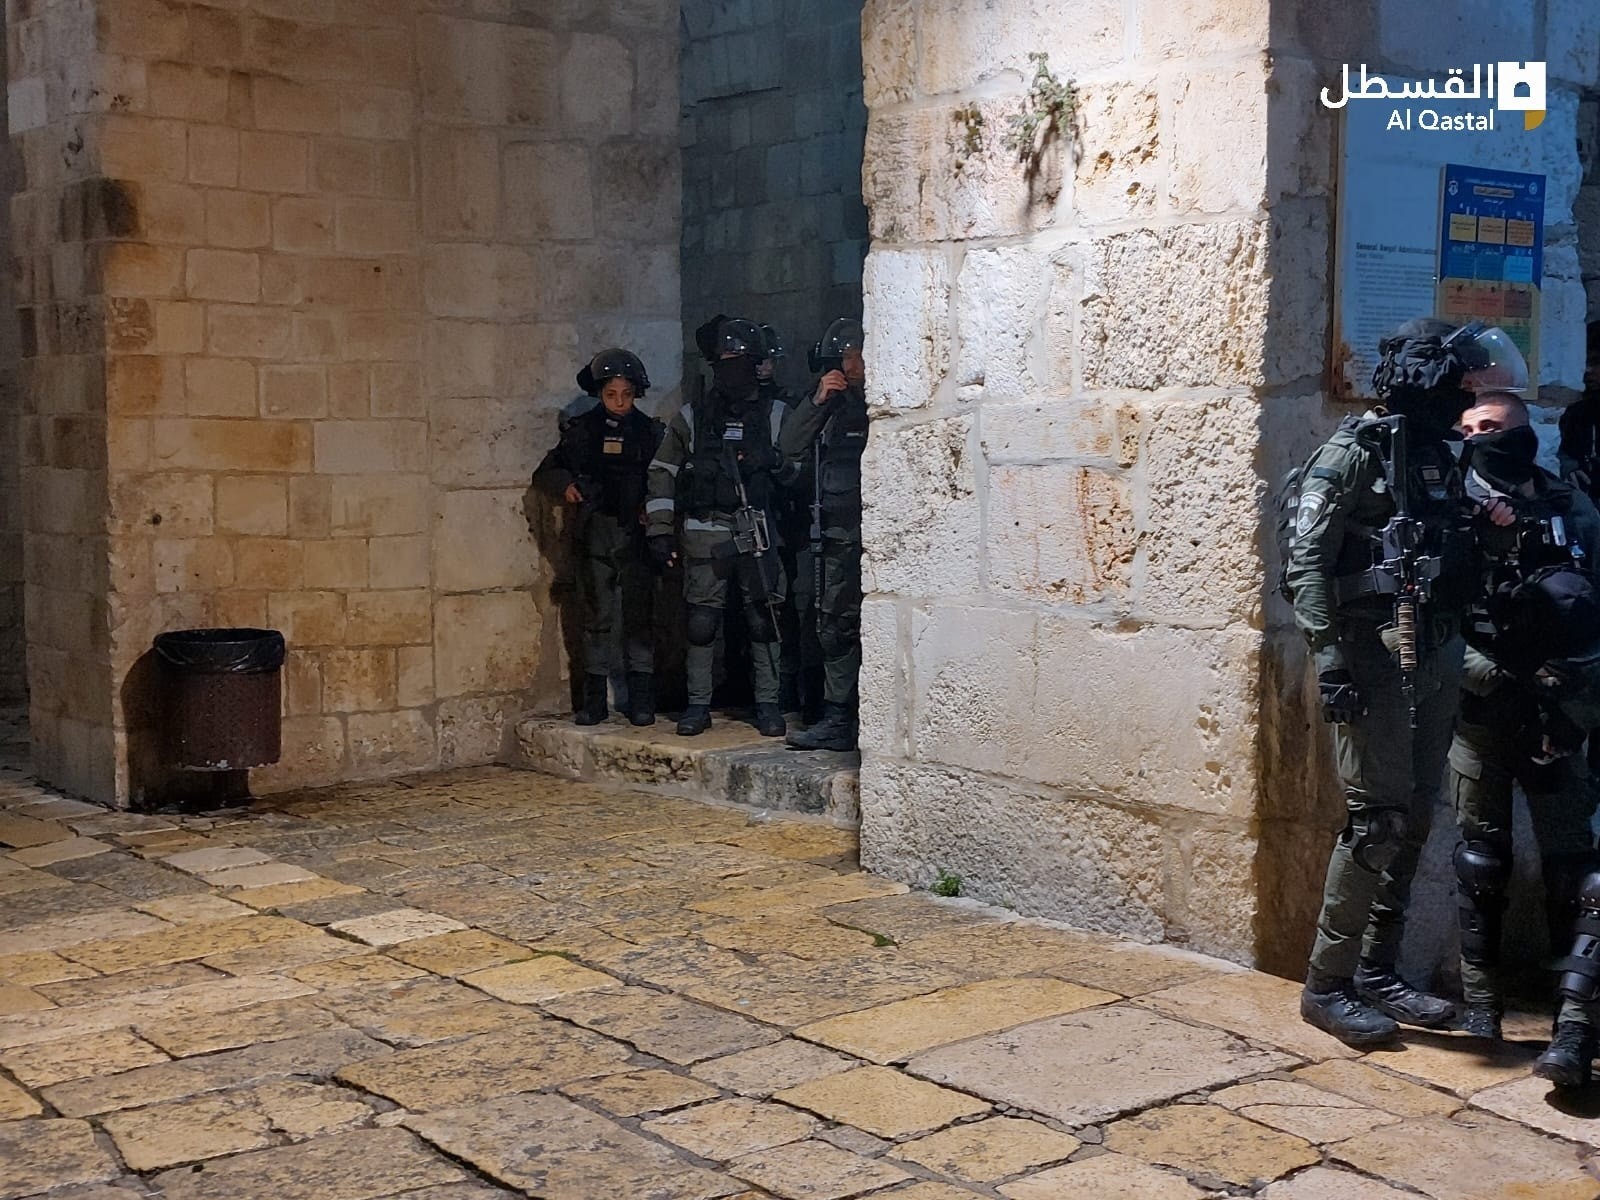 بالفيديو والصور: شرطة الاحتلال تستنفر في "الأقصى" والتوتر يسود المكان